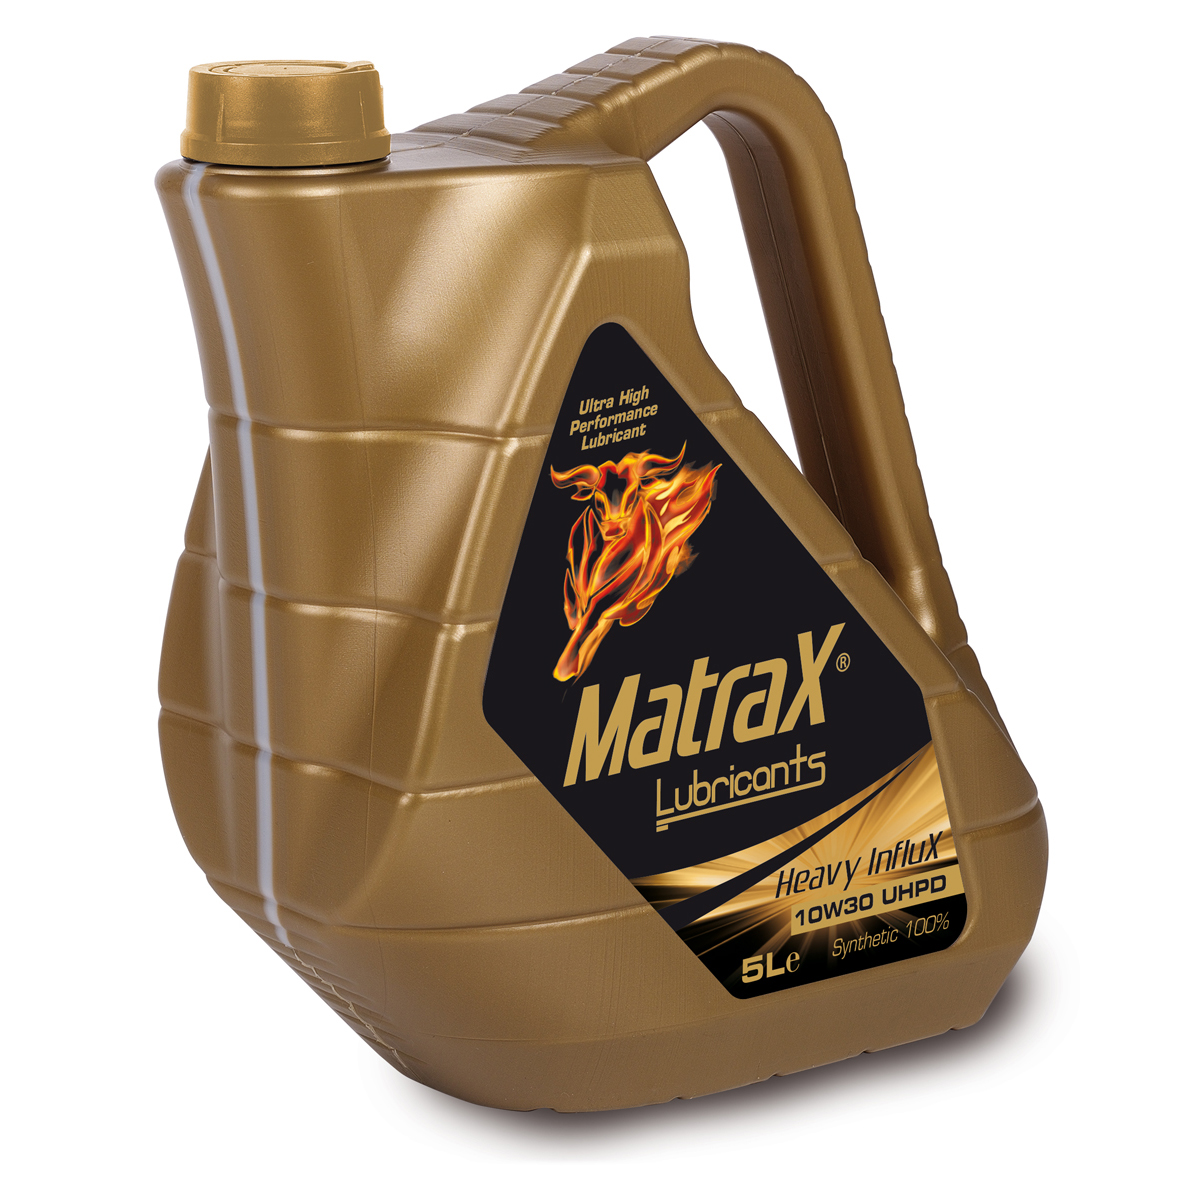 matrax-lubricants-heavy-influx-10w30-uhpd-5l